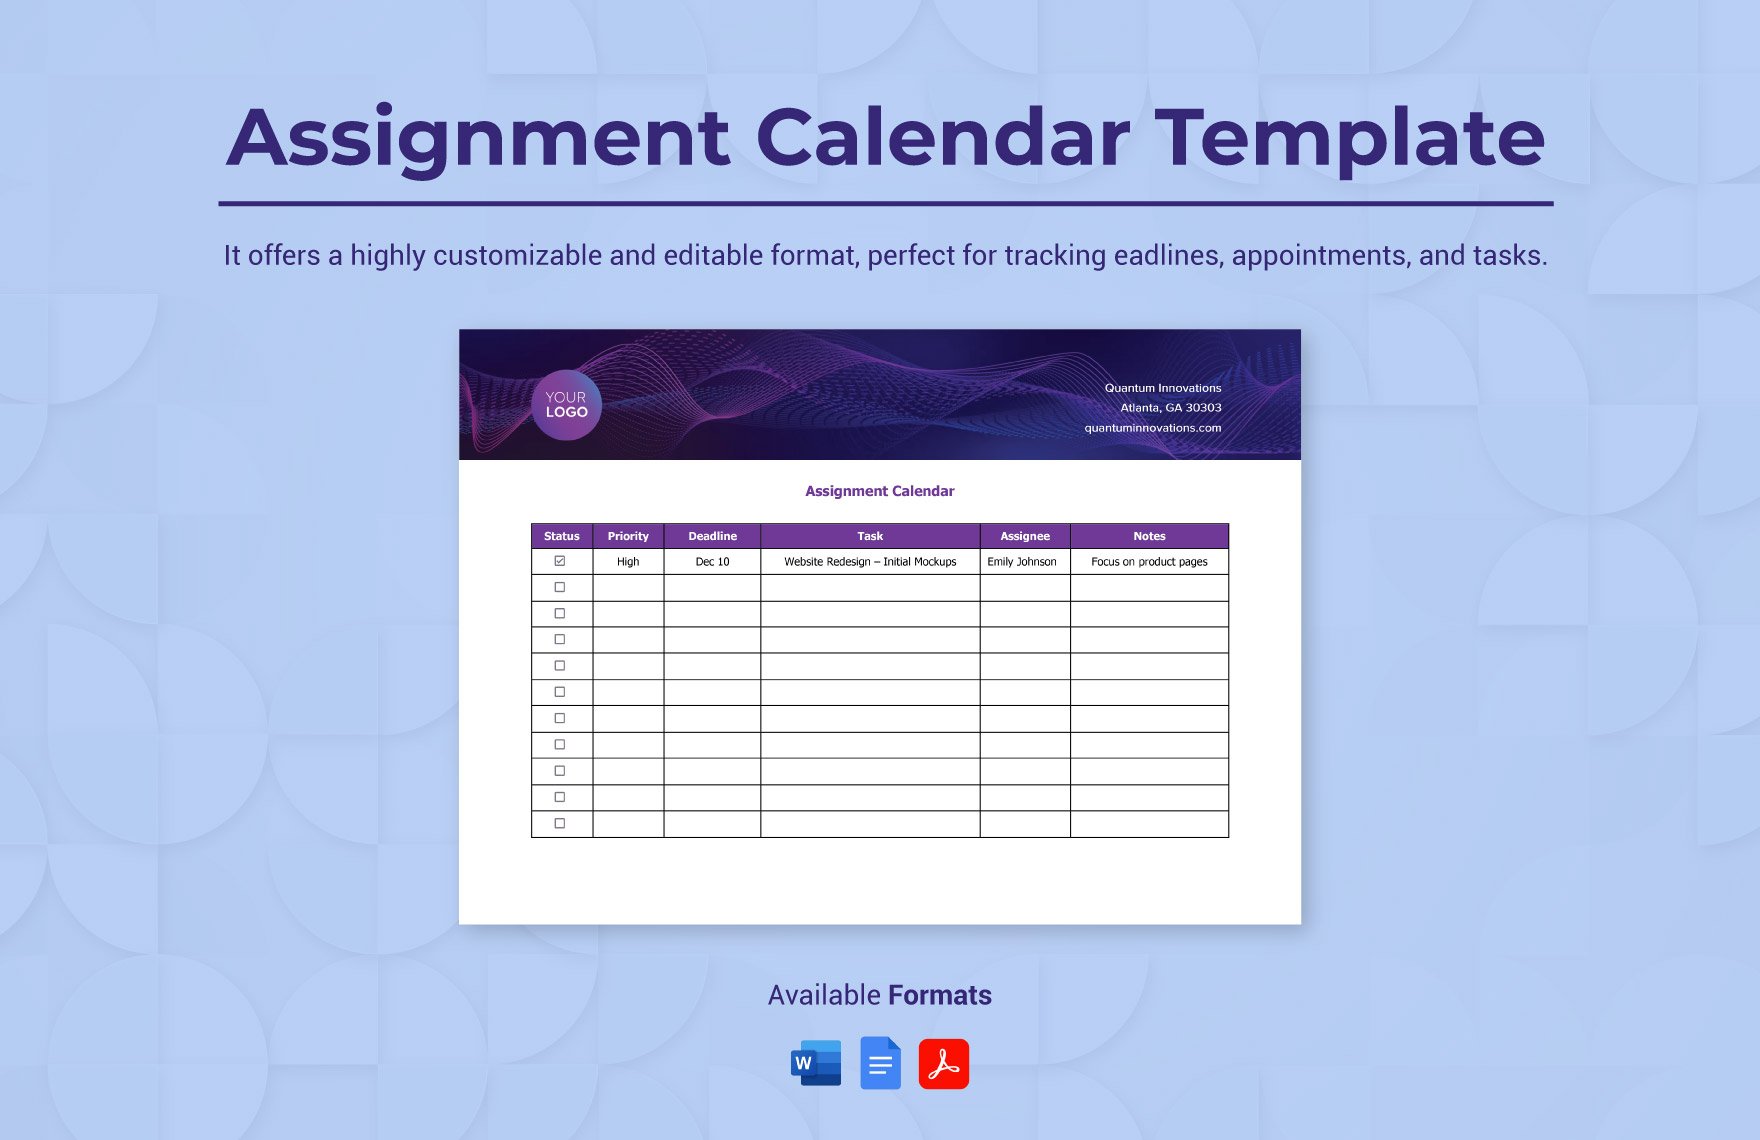 Assignment Calendar Template